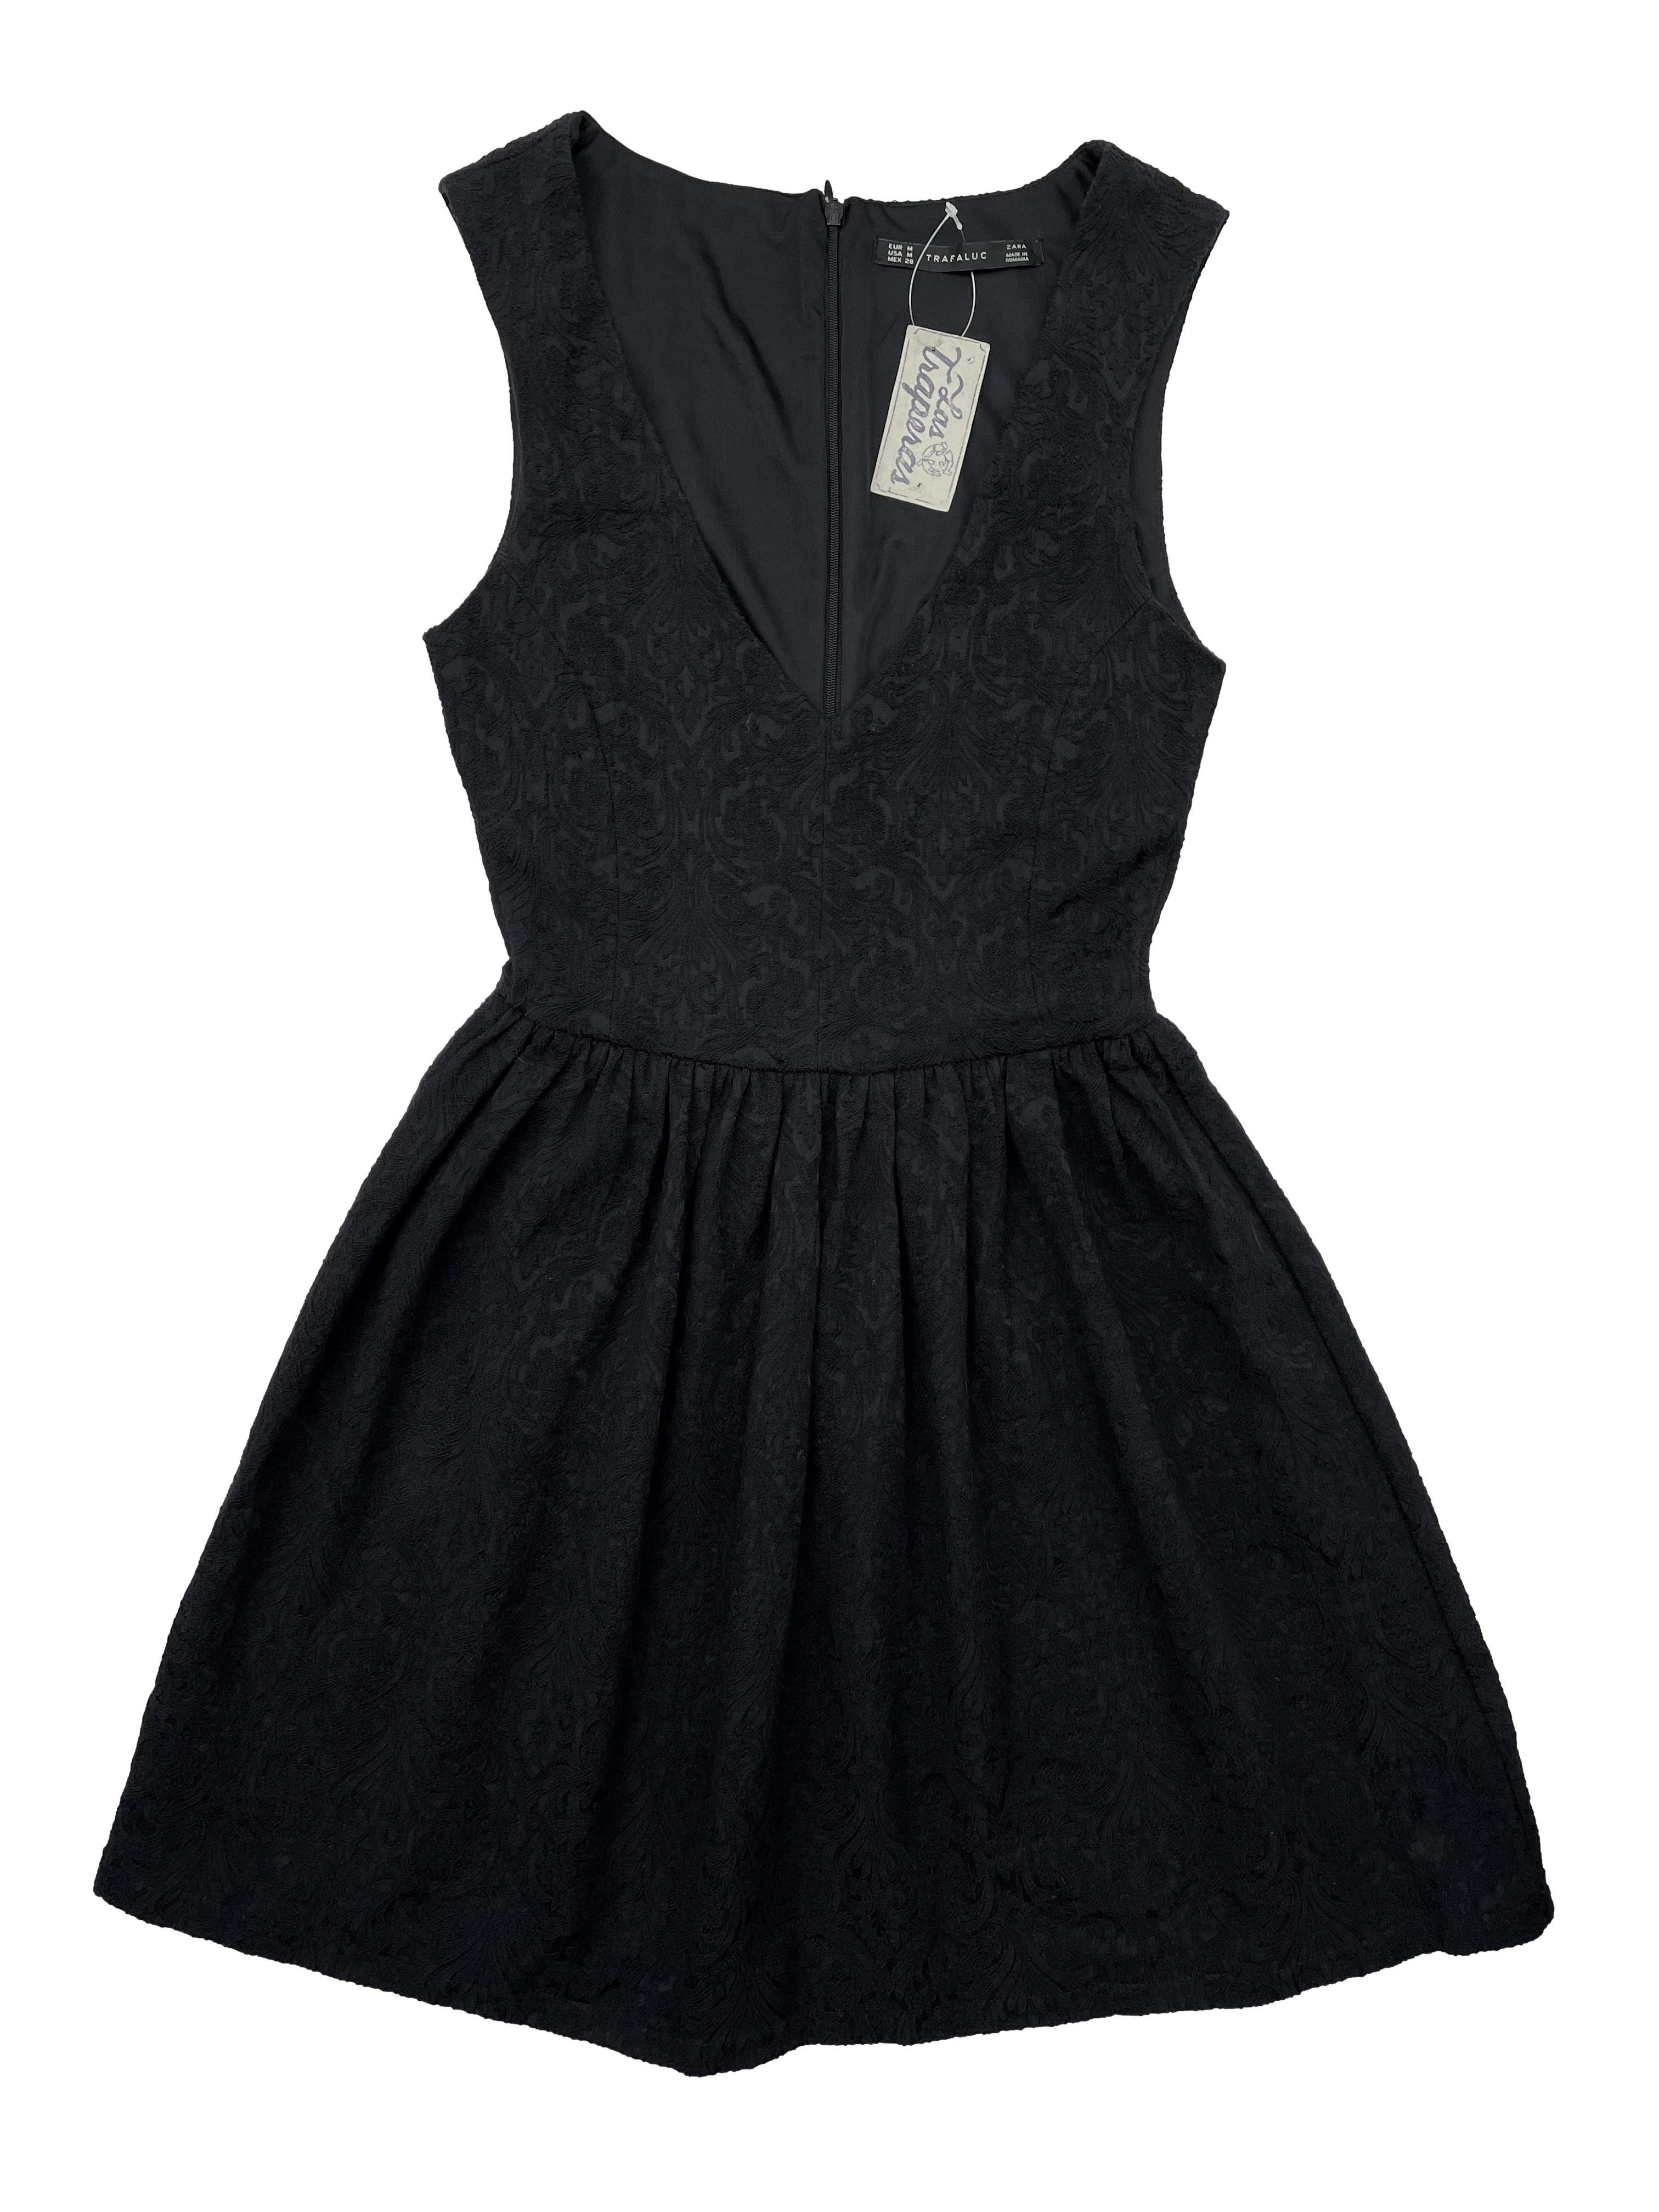 Vestido negro Zara corte princesa, textura tipo brocado, con forro ,escote en V y cierre invisible en espalda. Busto 80cm, Largo 84cm.